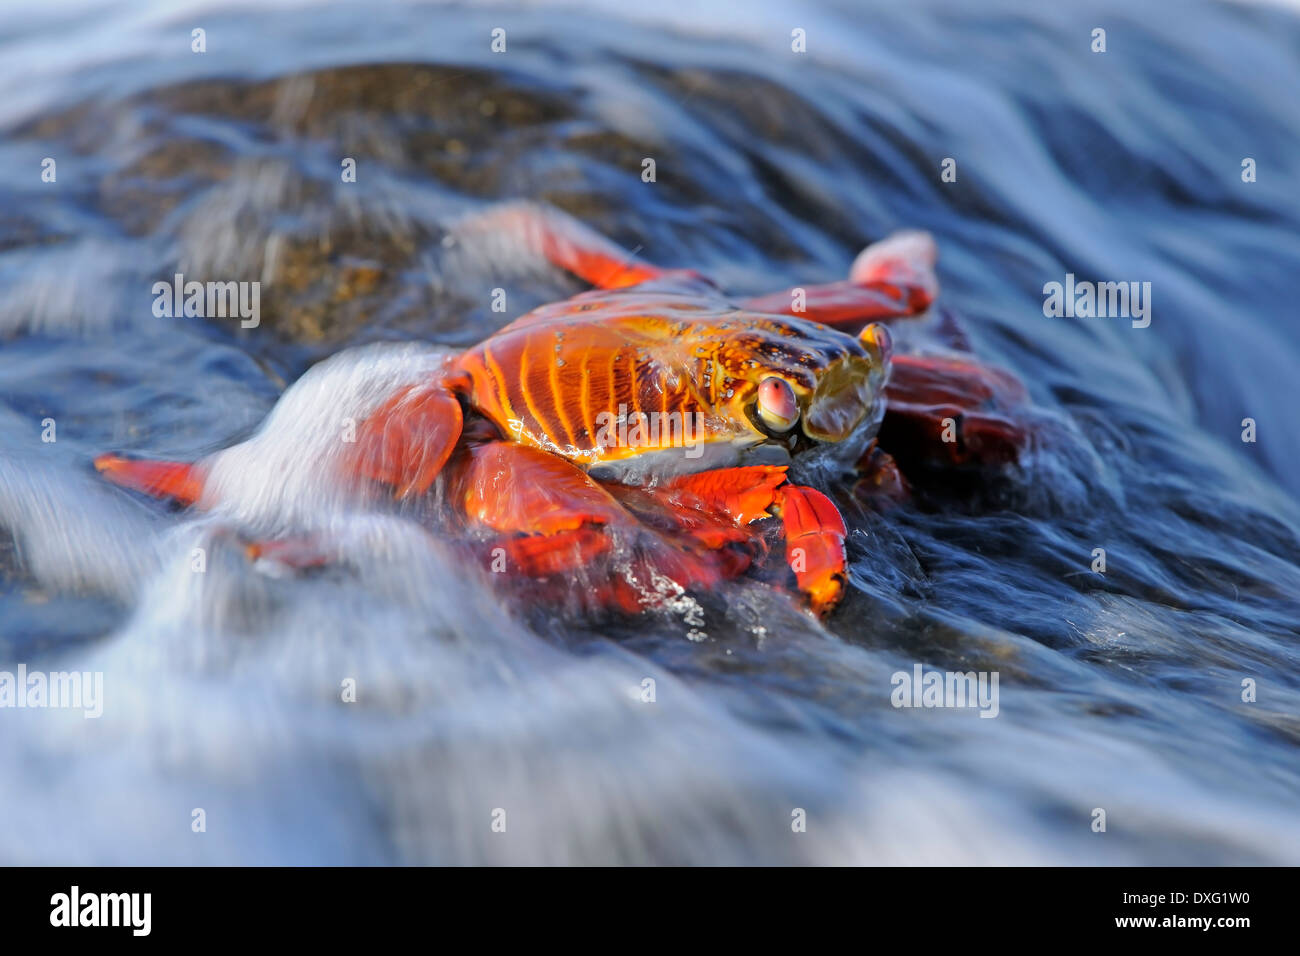 Sally Lightfoot Crab, Galapagos Islands, Ecuador / (Grapsus grapsus) / Red Rock Crab Stock Photo